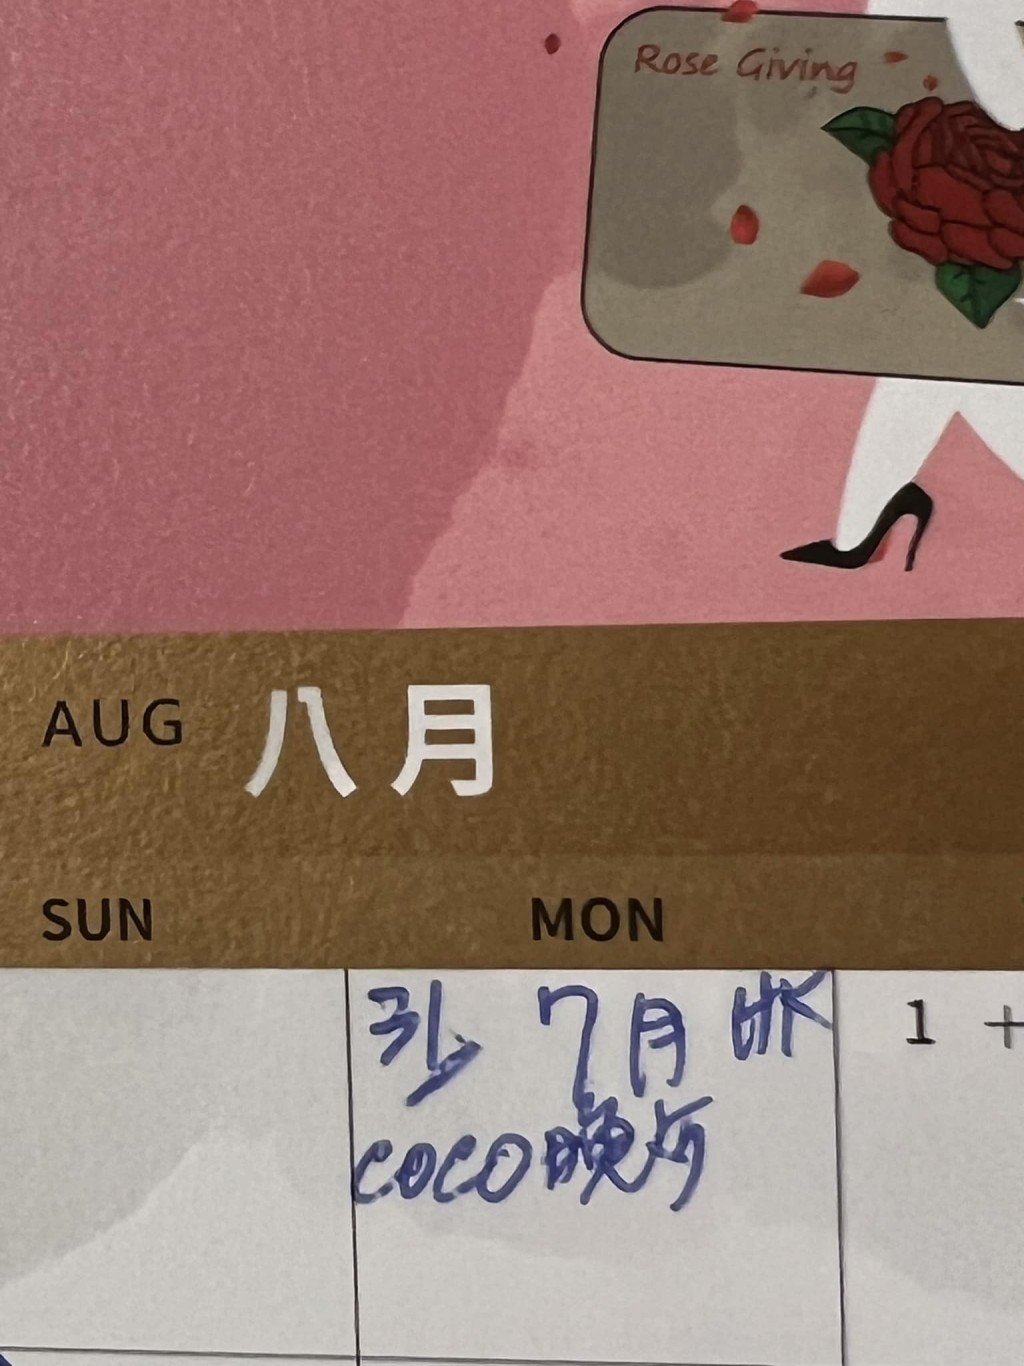 甄妮日前更晒出行程表，写上：「7月HK coco晚餐。」曝光原定今日约了李玟在港见面。